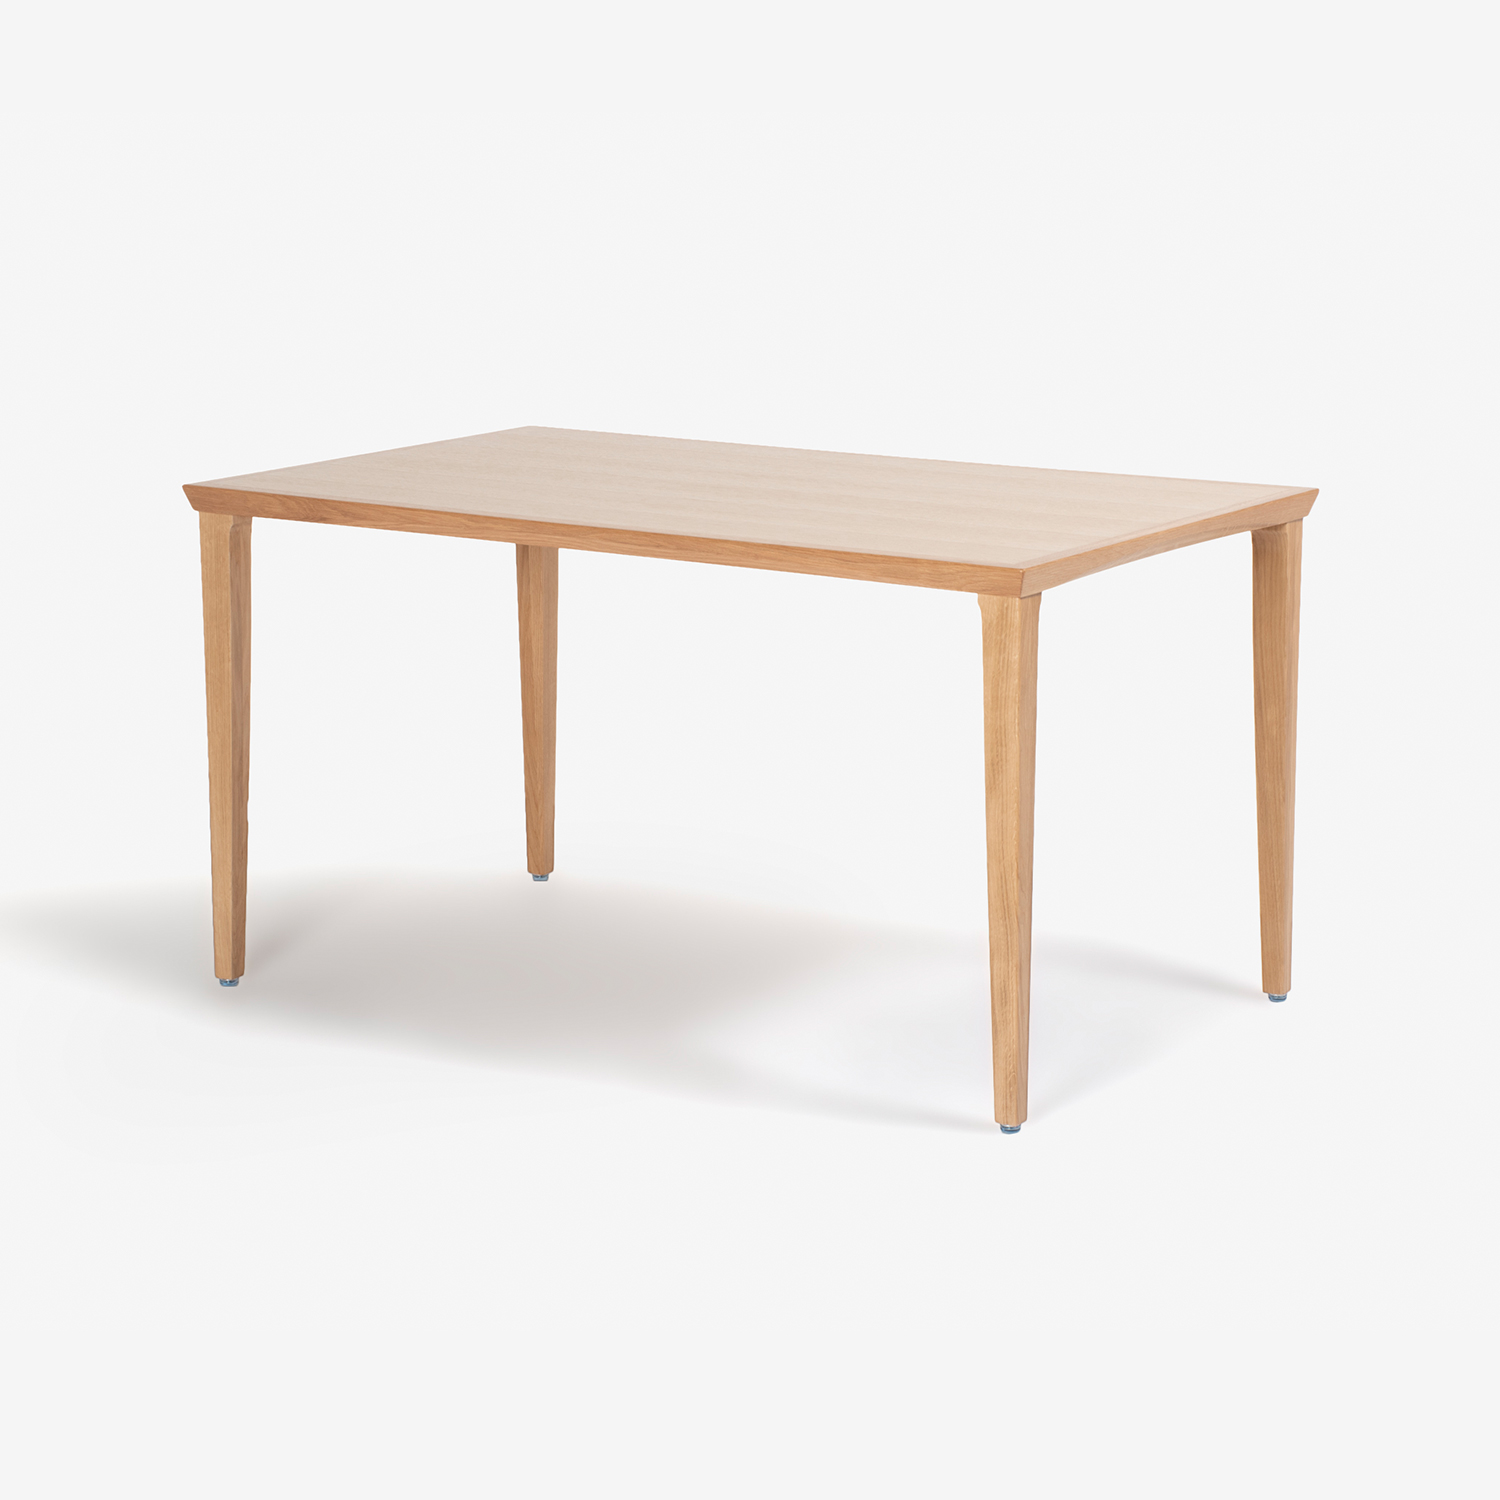 秋田木工 ダイニングテーブル「N-T005」ナラ材 ホワイトオーク色 全3